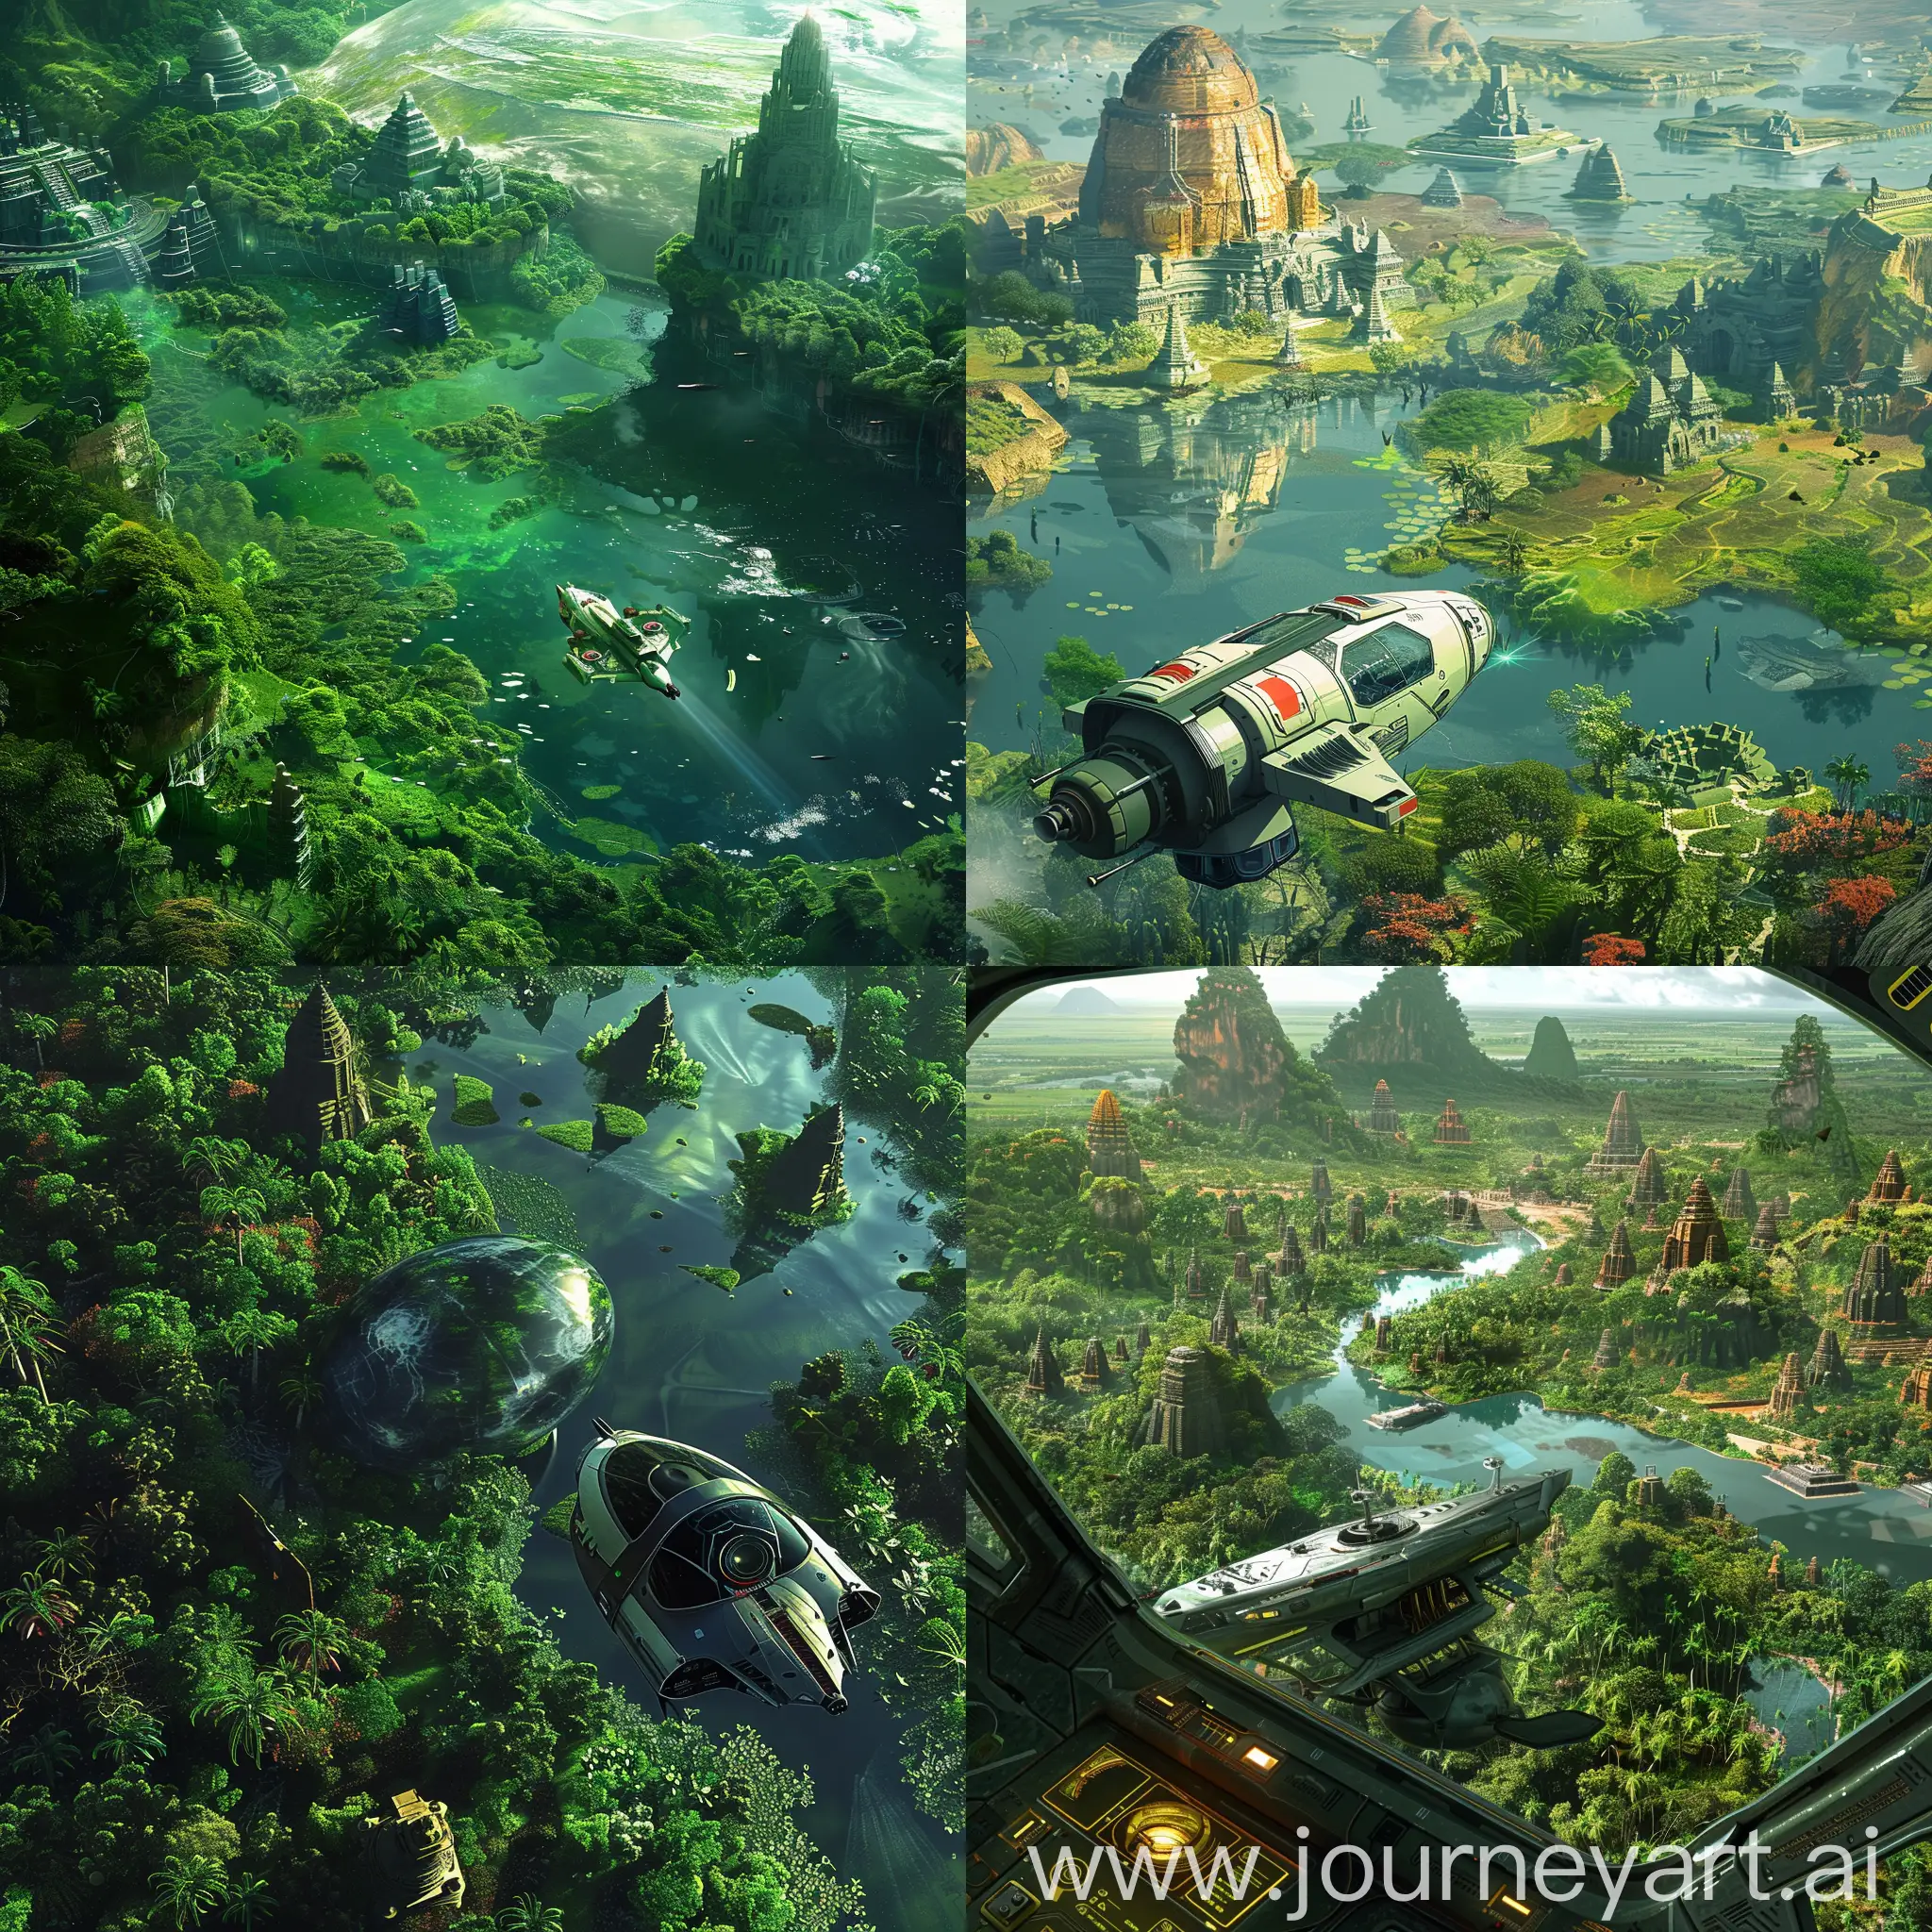 Vista de perspectiva de una pequeña nave espacial y de fondo un planeta alienígena muy verde con vegetación y agua abundante, desde el espacio se ven templos en el planeta